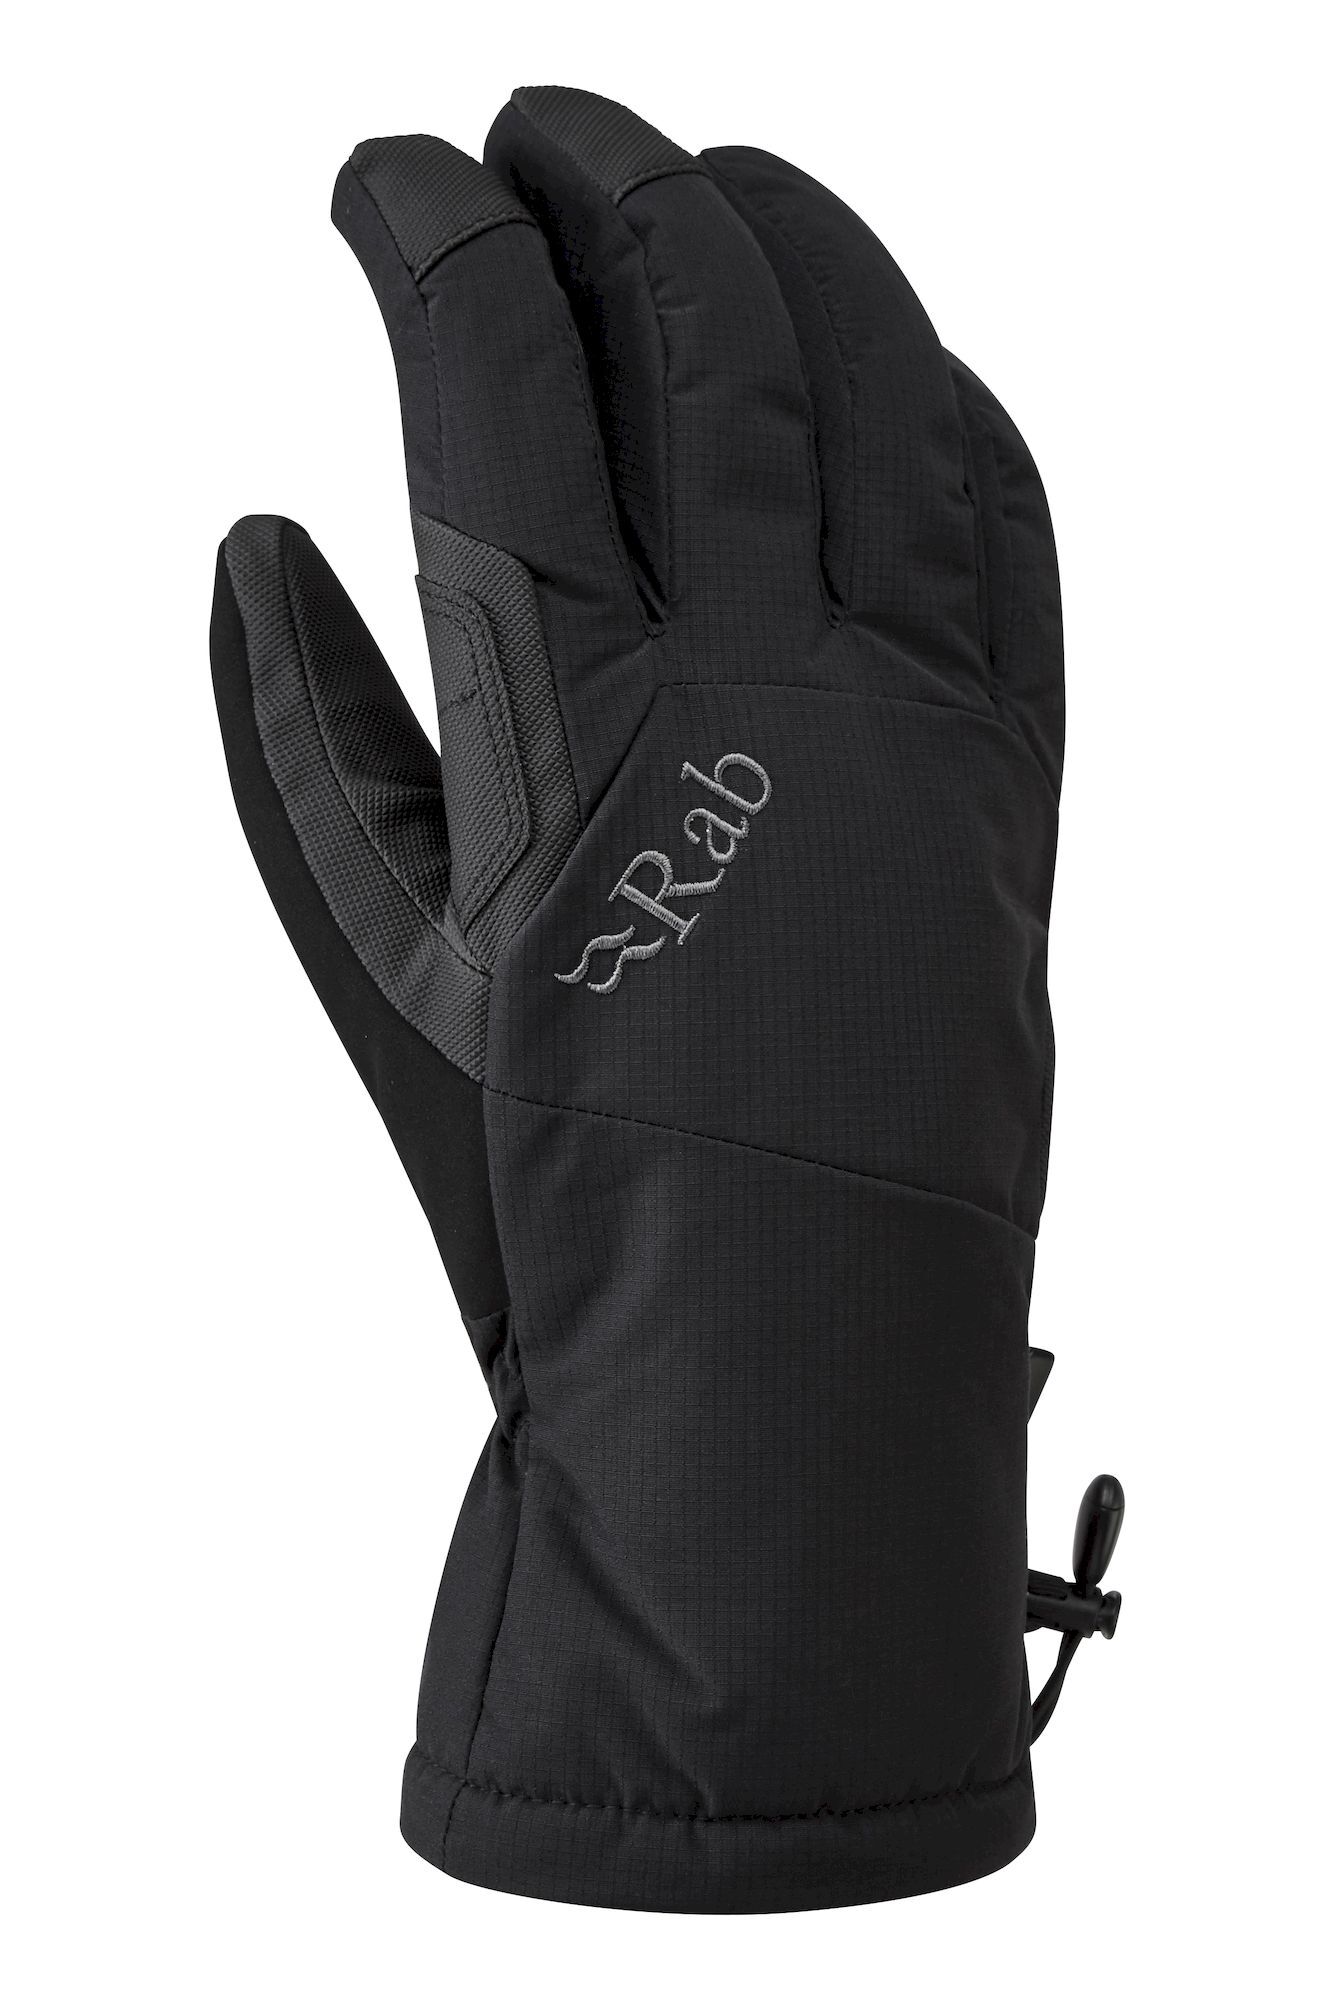 Rab Storm Gloves - Skihandschoenen - Heren | Hardloop